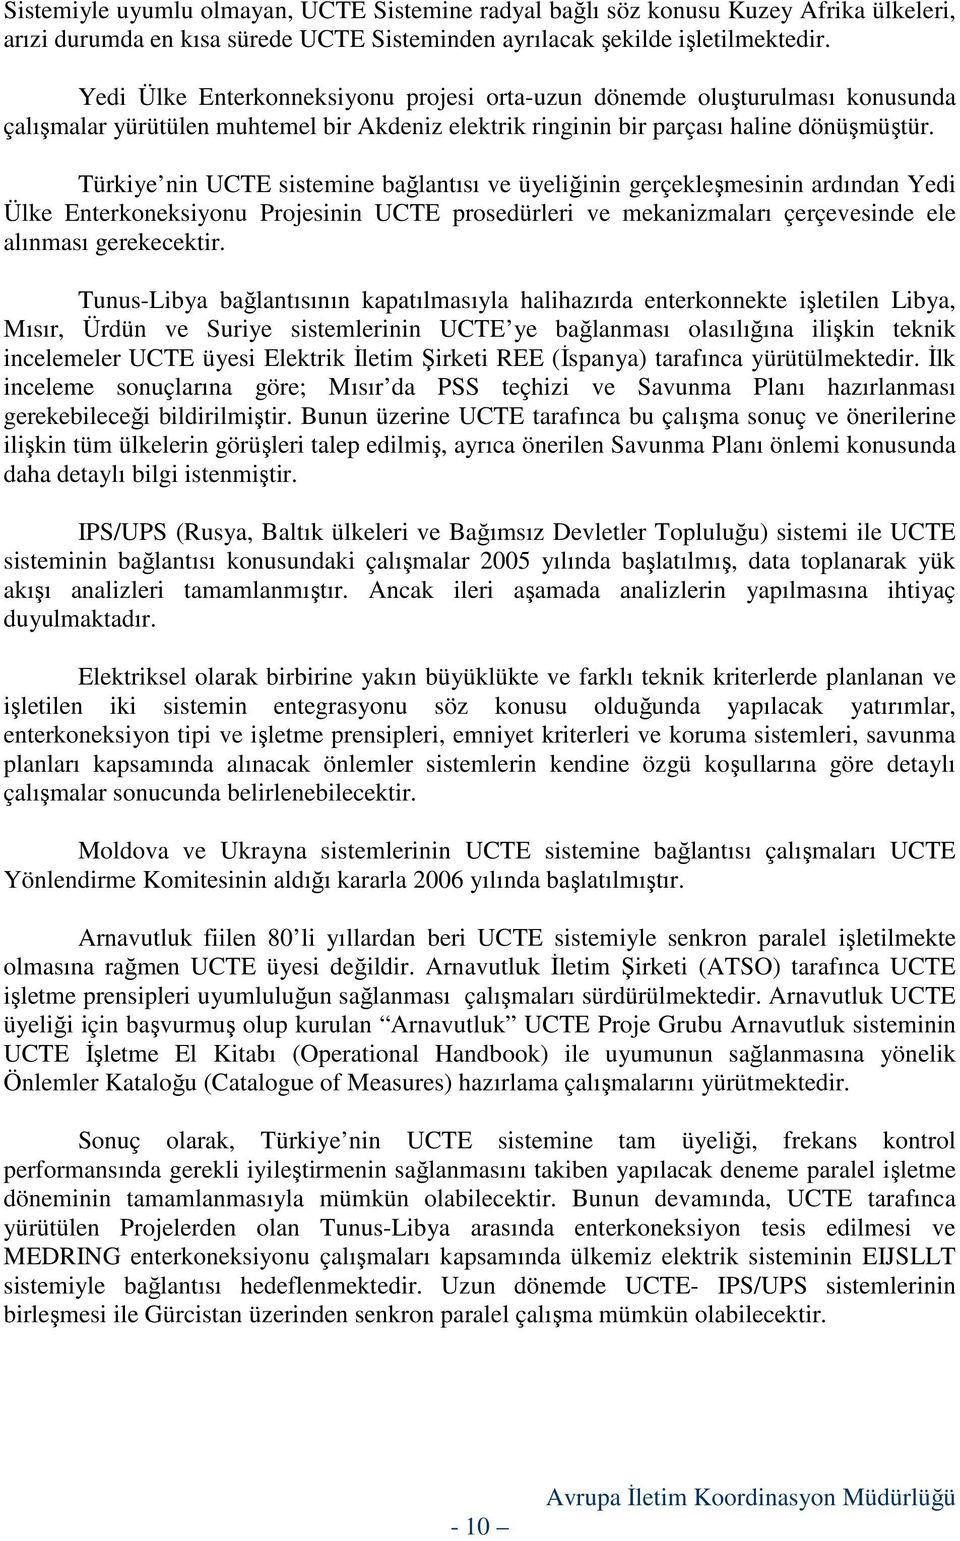 Türkiye nin UCTE sistemine bağlantısı ve üyeliğinin gerçekleşmesinin ardından Yedi Ülke Enterkoneksiyonu Projesinin UCTE prosedürleri ve mekanizmaları çerçevesinde ele alınması gerekecektir.